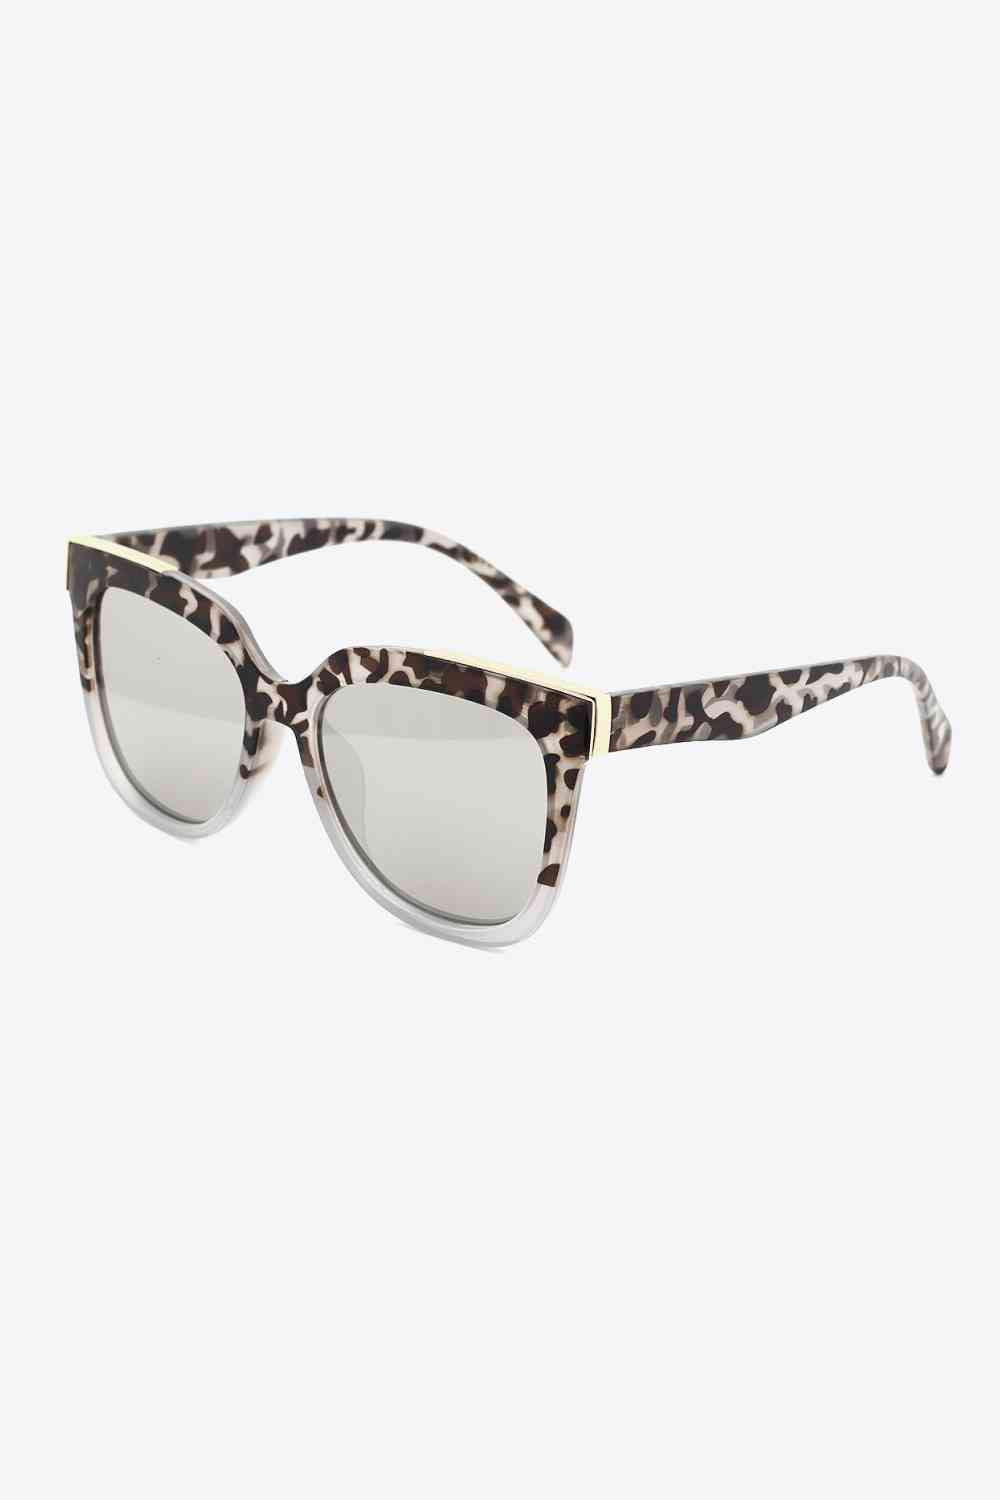 Tortoiseshell Polycarbonate Frame Full Rim Sunglasses Light Gray One Size